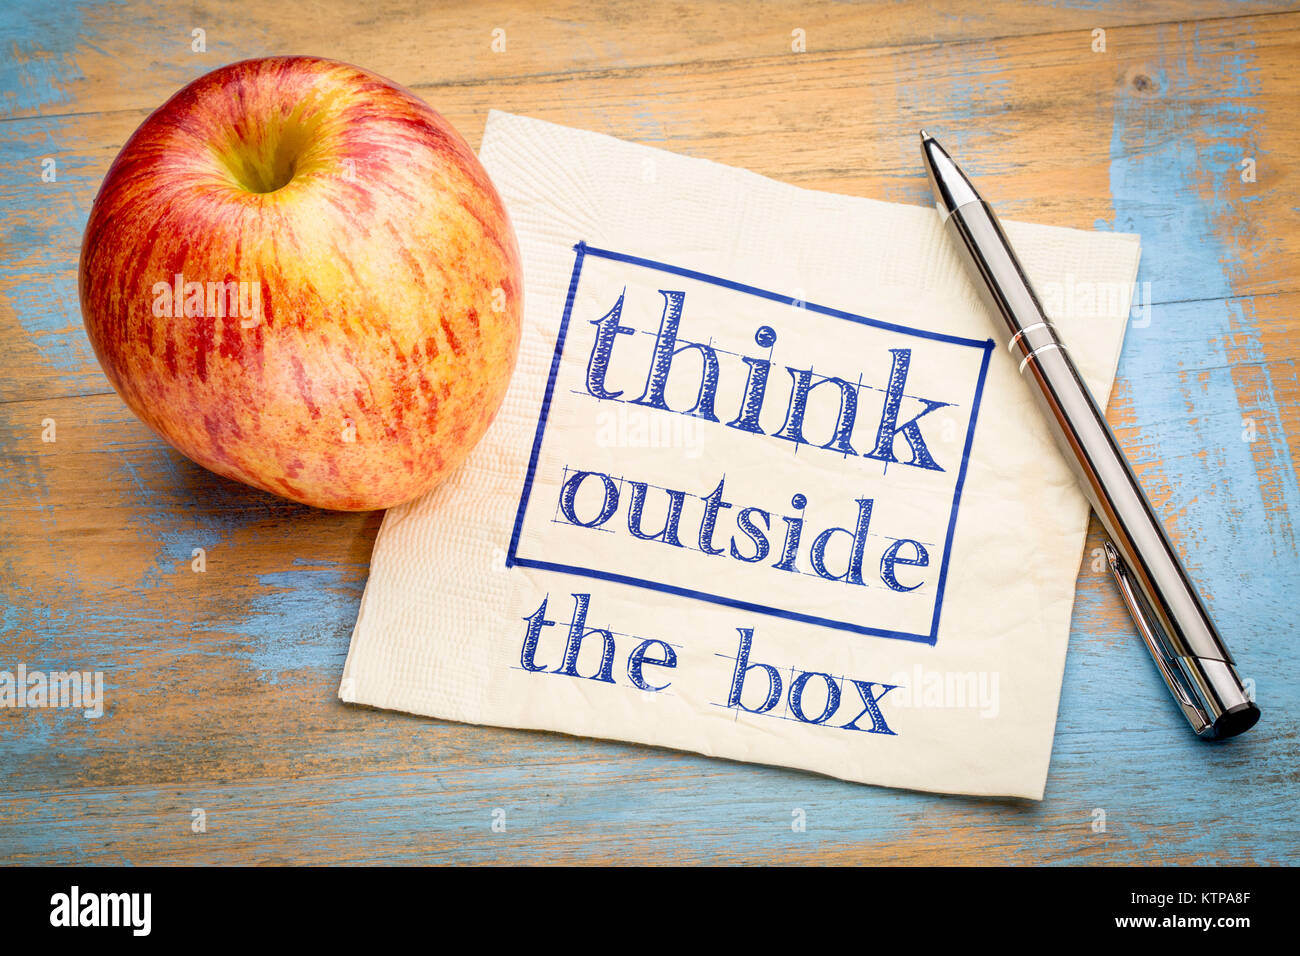 Denken außerhalb der Box Konzept - Handschrift auf eine Serviette mit einem Apple Stockfoto